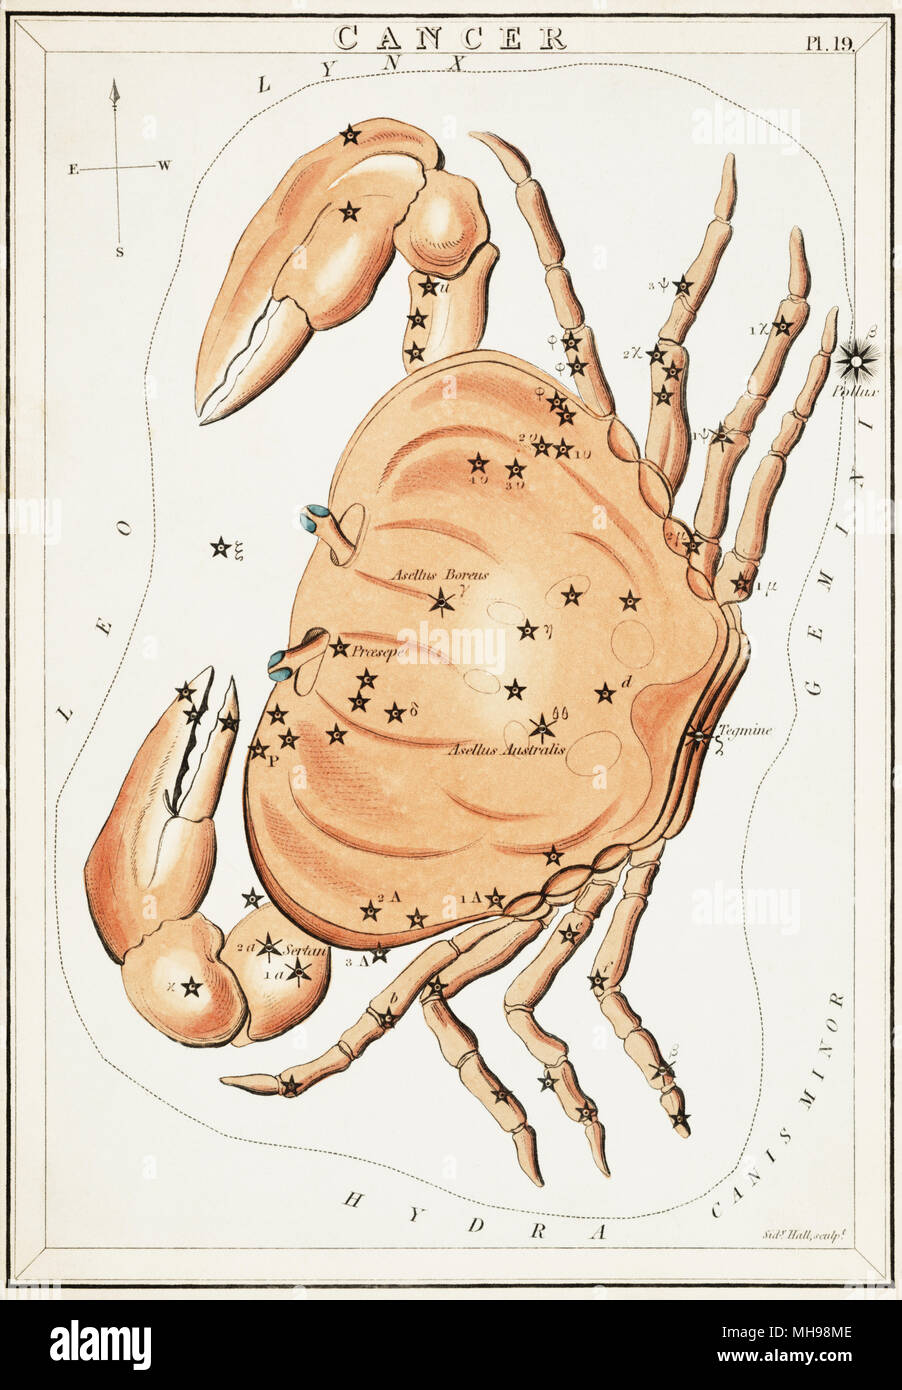 Le cancer. Numéro de carte à partir de 19 Hotel Kashyap, miroir ou d'une vue sur le ciel, l'un d'un jeu de 32 cartes carte des étoiles astronomique gravée par Sidney Hall et publshed 1824. Banque D'Images